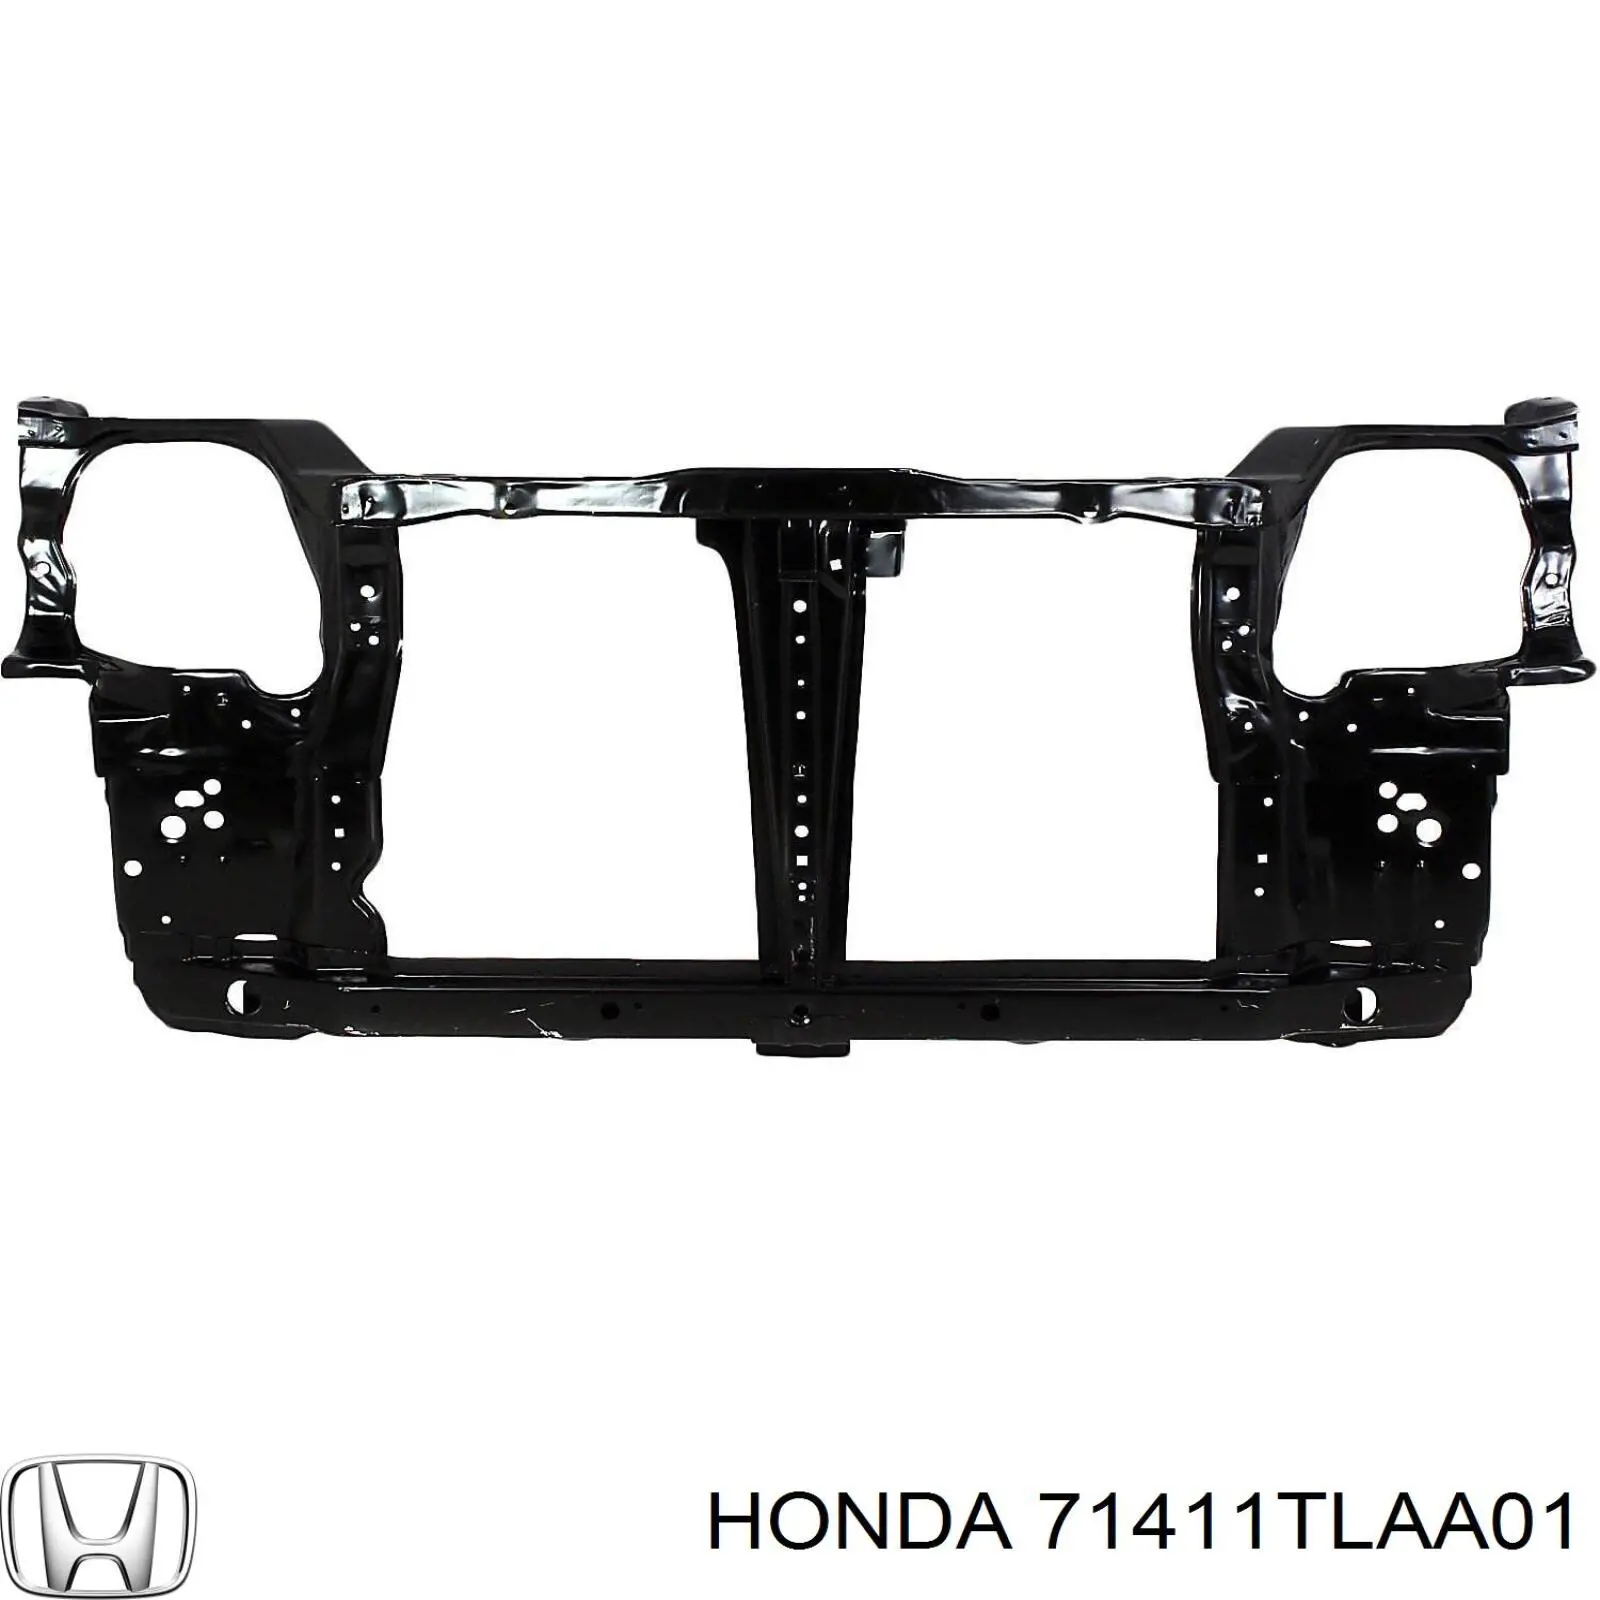 Суппорт радиатора в сборе (монтажная панель крепления фар) Honda 71411TLAA01